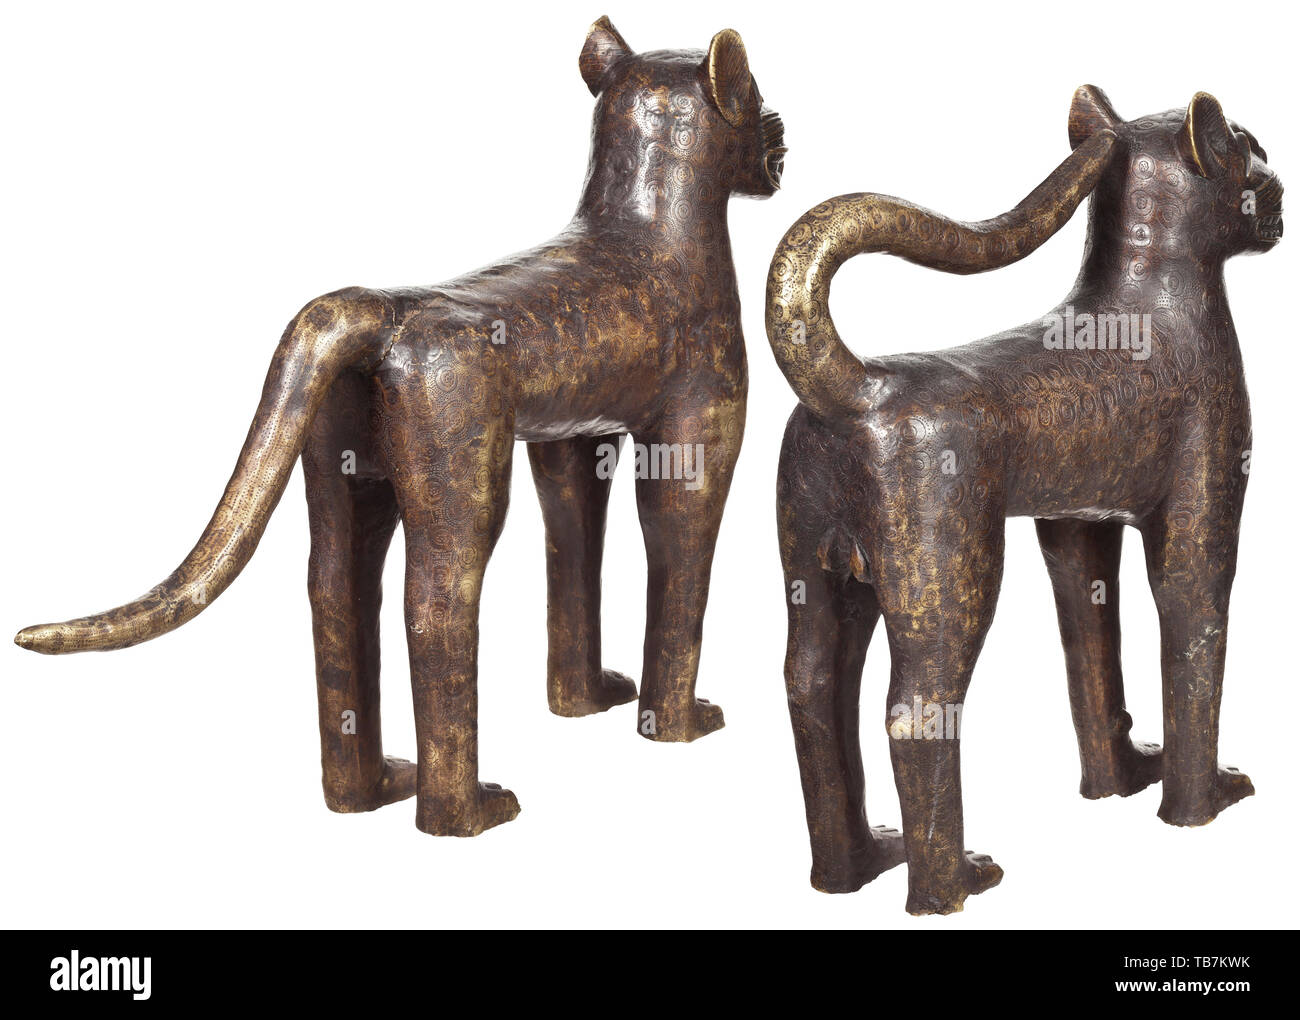 Une paire de bronze nigérian des léopards, Bénin, 1ère moitié du 20e siècle, en bronze à patine sombre, légèrement frotté par endroits, avec surface finement gravée. L'inscription d'un mâle et une femelle dans une posture typique. Hauteur 59 cm et 61 cm, longueur 60 cm et 93 cm. Inclus est une expertise de thermoluminescence daté de 2002 ce qui réduit l'âge de la sculpture à 80 ans ( +/- 25 ans). Le léopard était le symbole de la règle, et les histoires construit autour d'elle étaient étroitement liées avec les mythes. Les léopards ont été gardées comme animaux domestiques , , Additional-Rights Clearance-Info-Not-Available- Banque D'Images